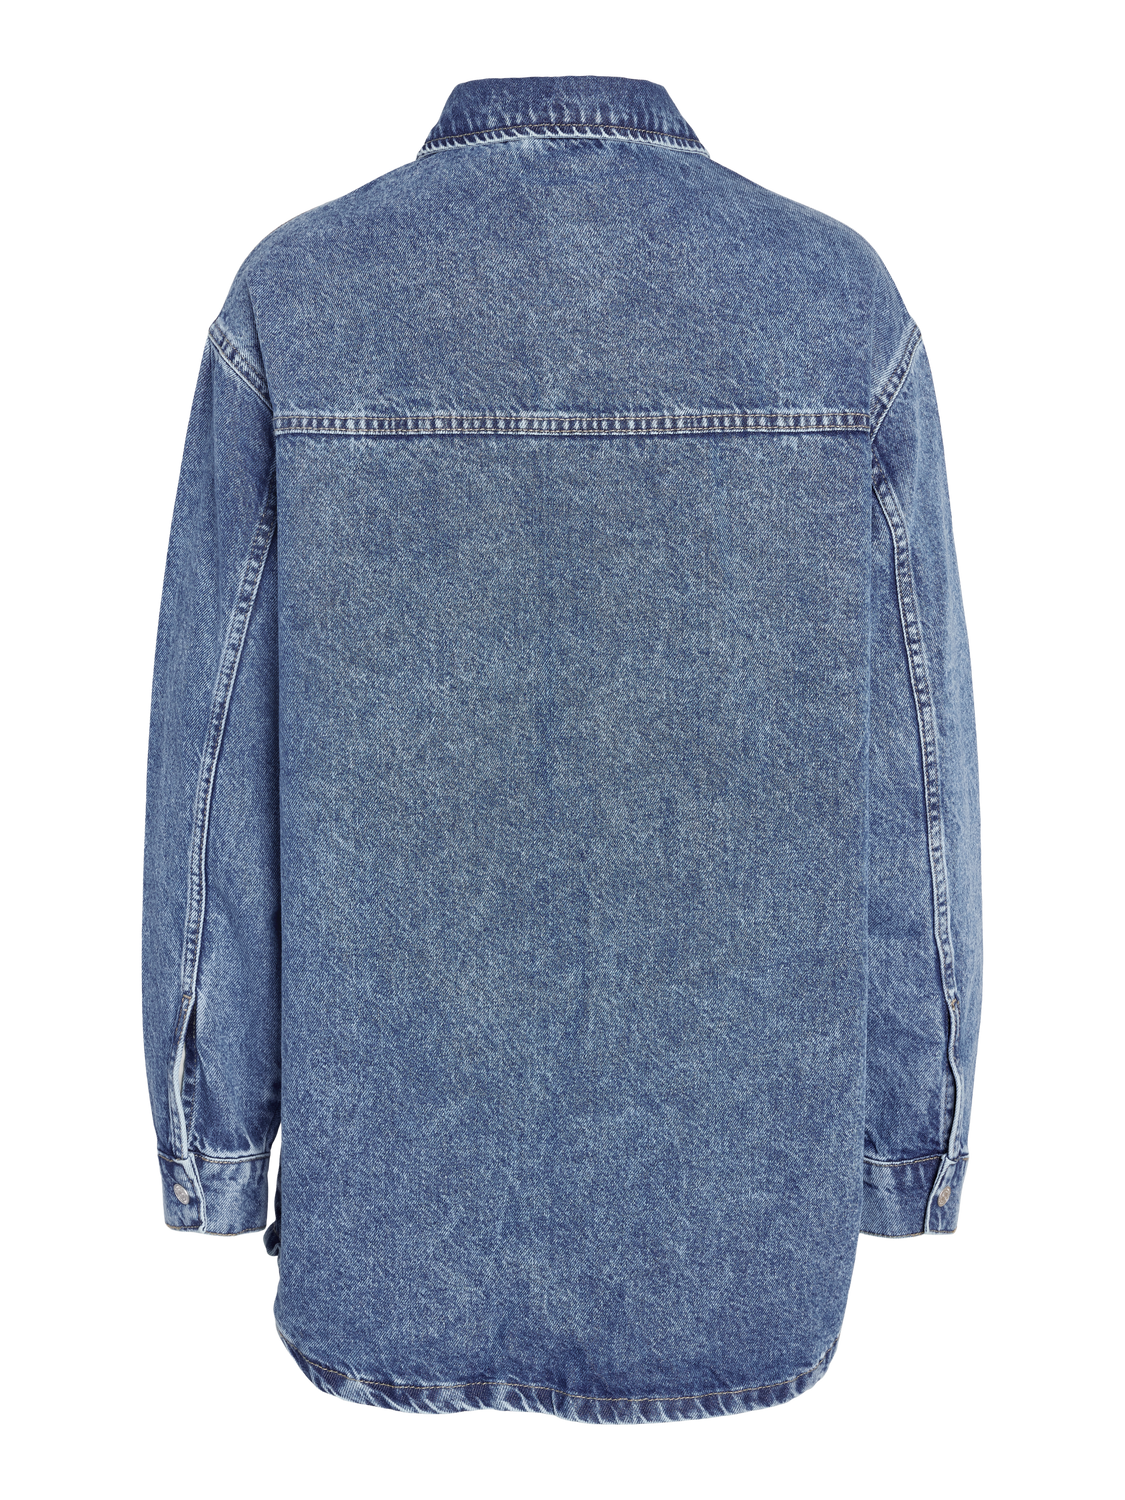 NMALVA Jacket - Medium Blue Denim